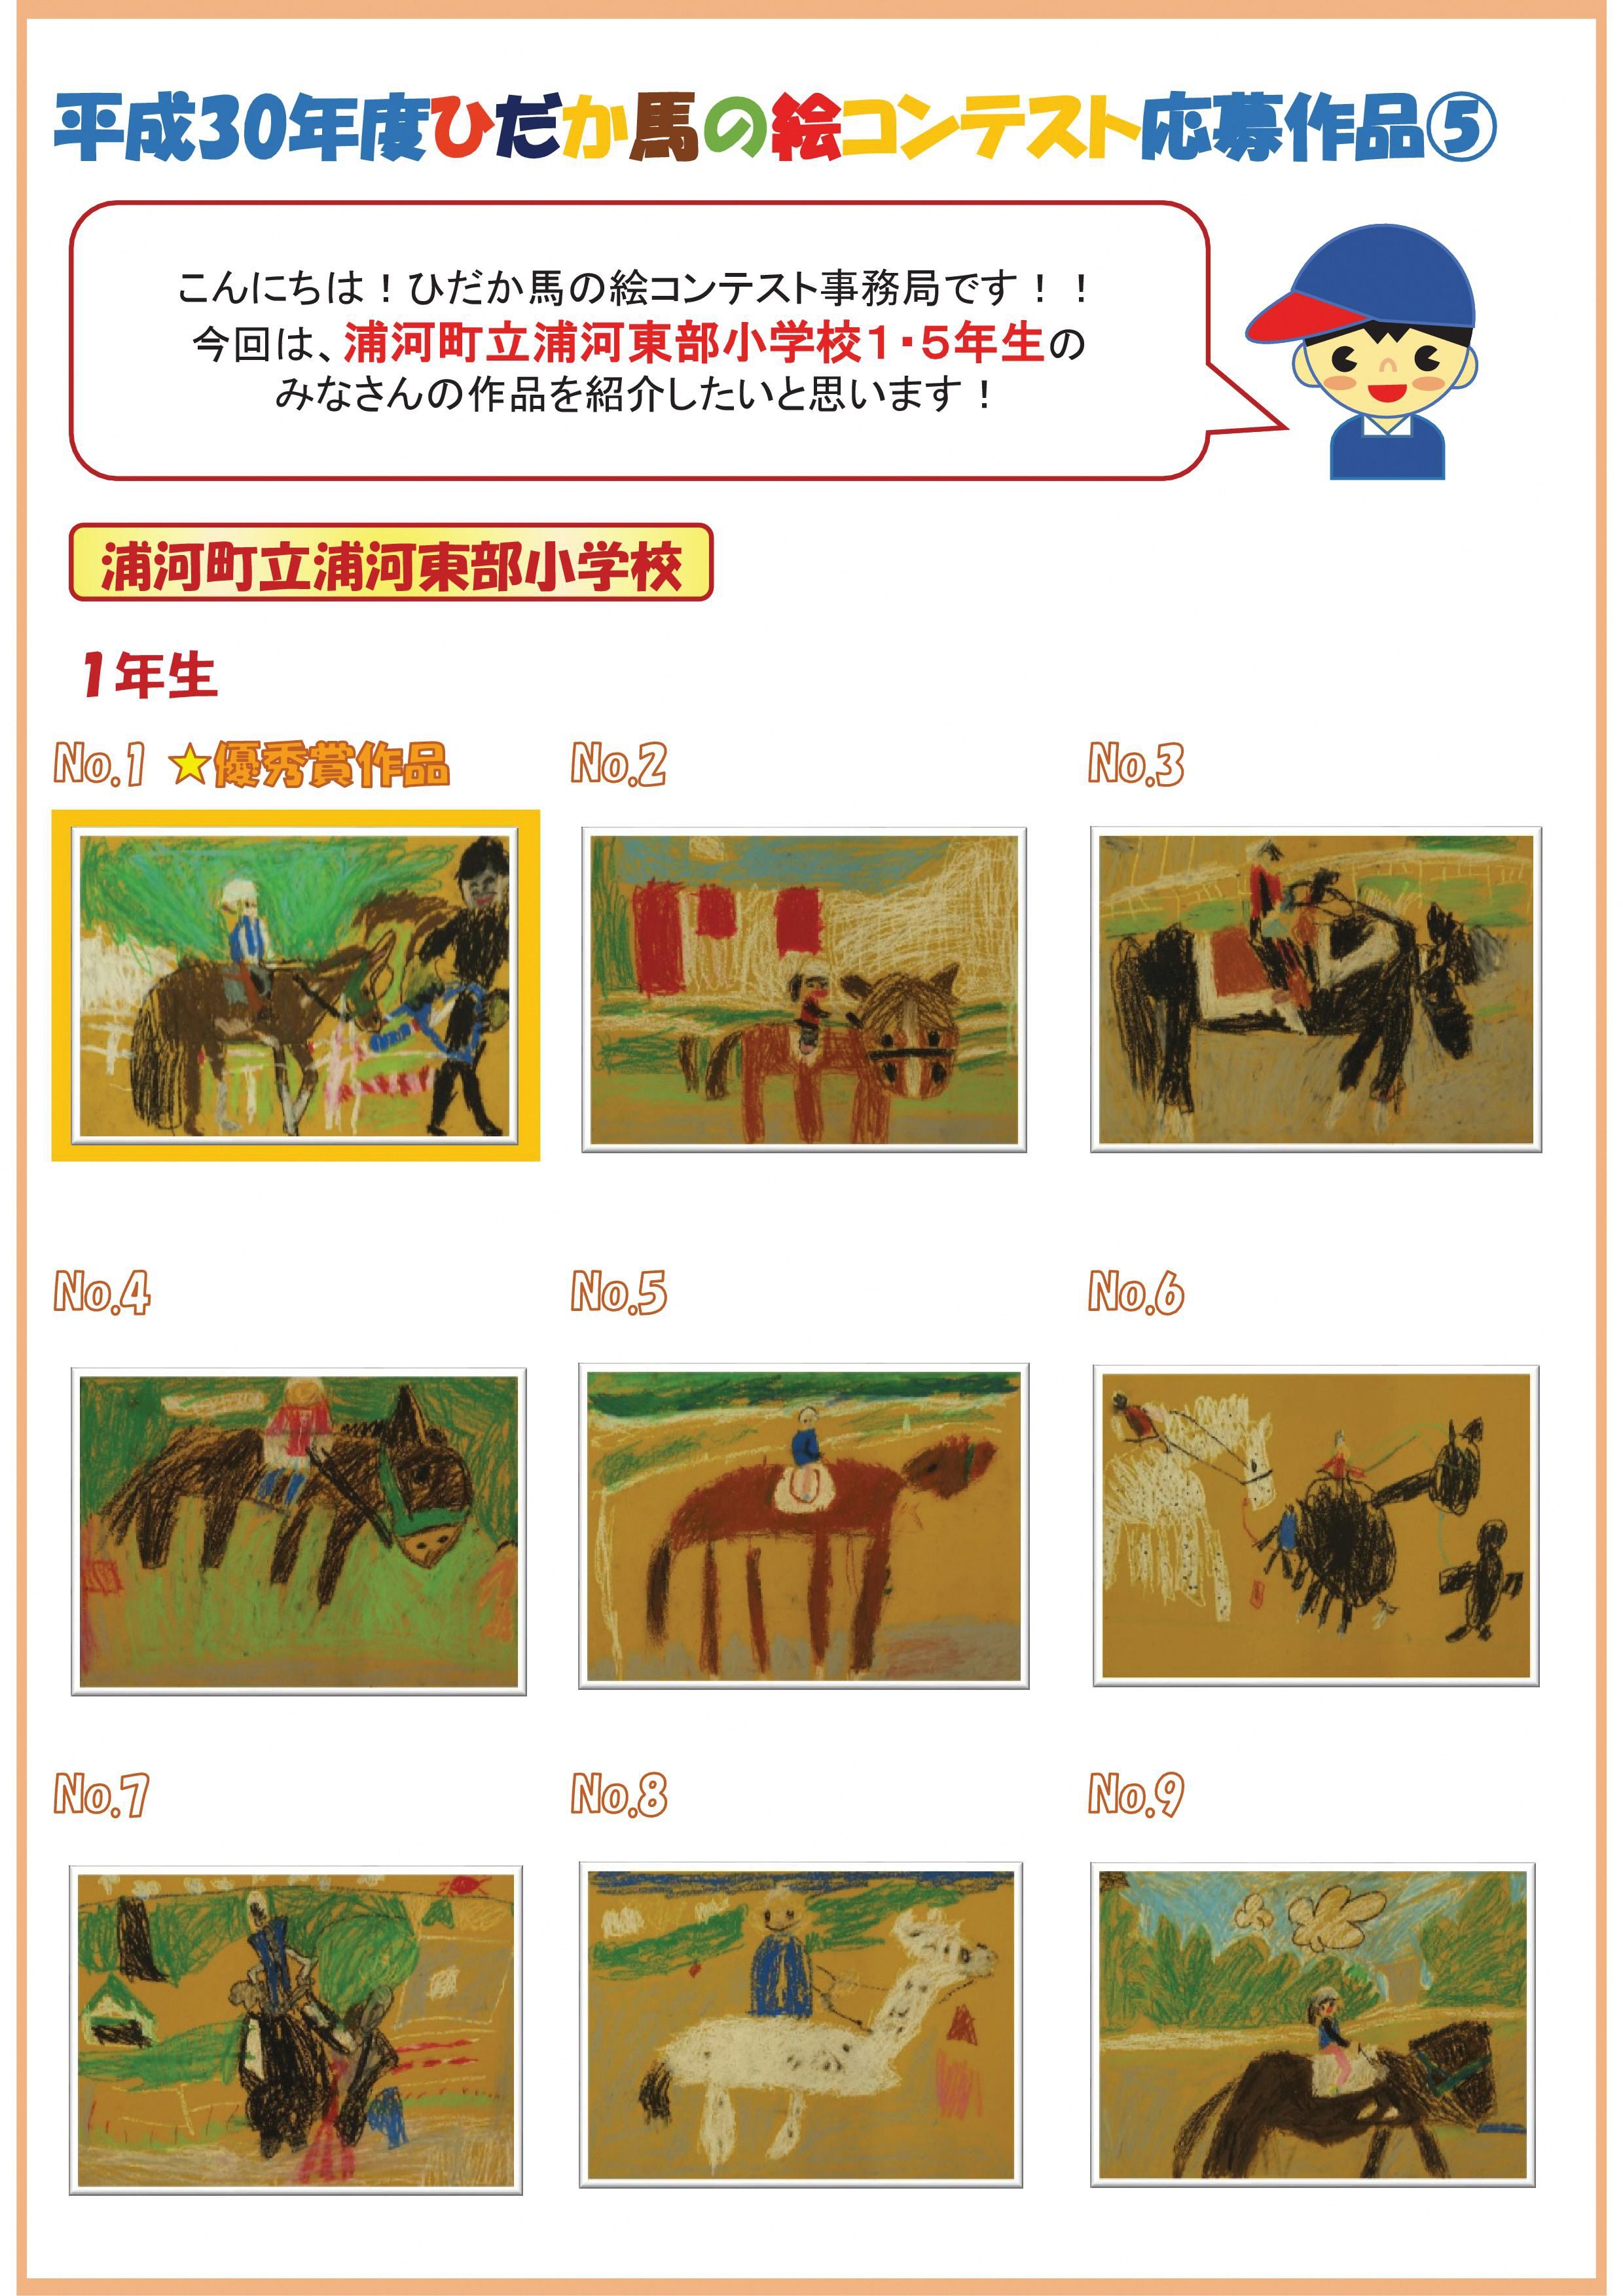 平成３０年度ひだか馬の絵コンテストの応募作品を公開します 第3回目 北海道庁のブログ 超 旬ほっかいどう 楽天ブログ